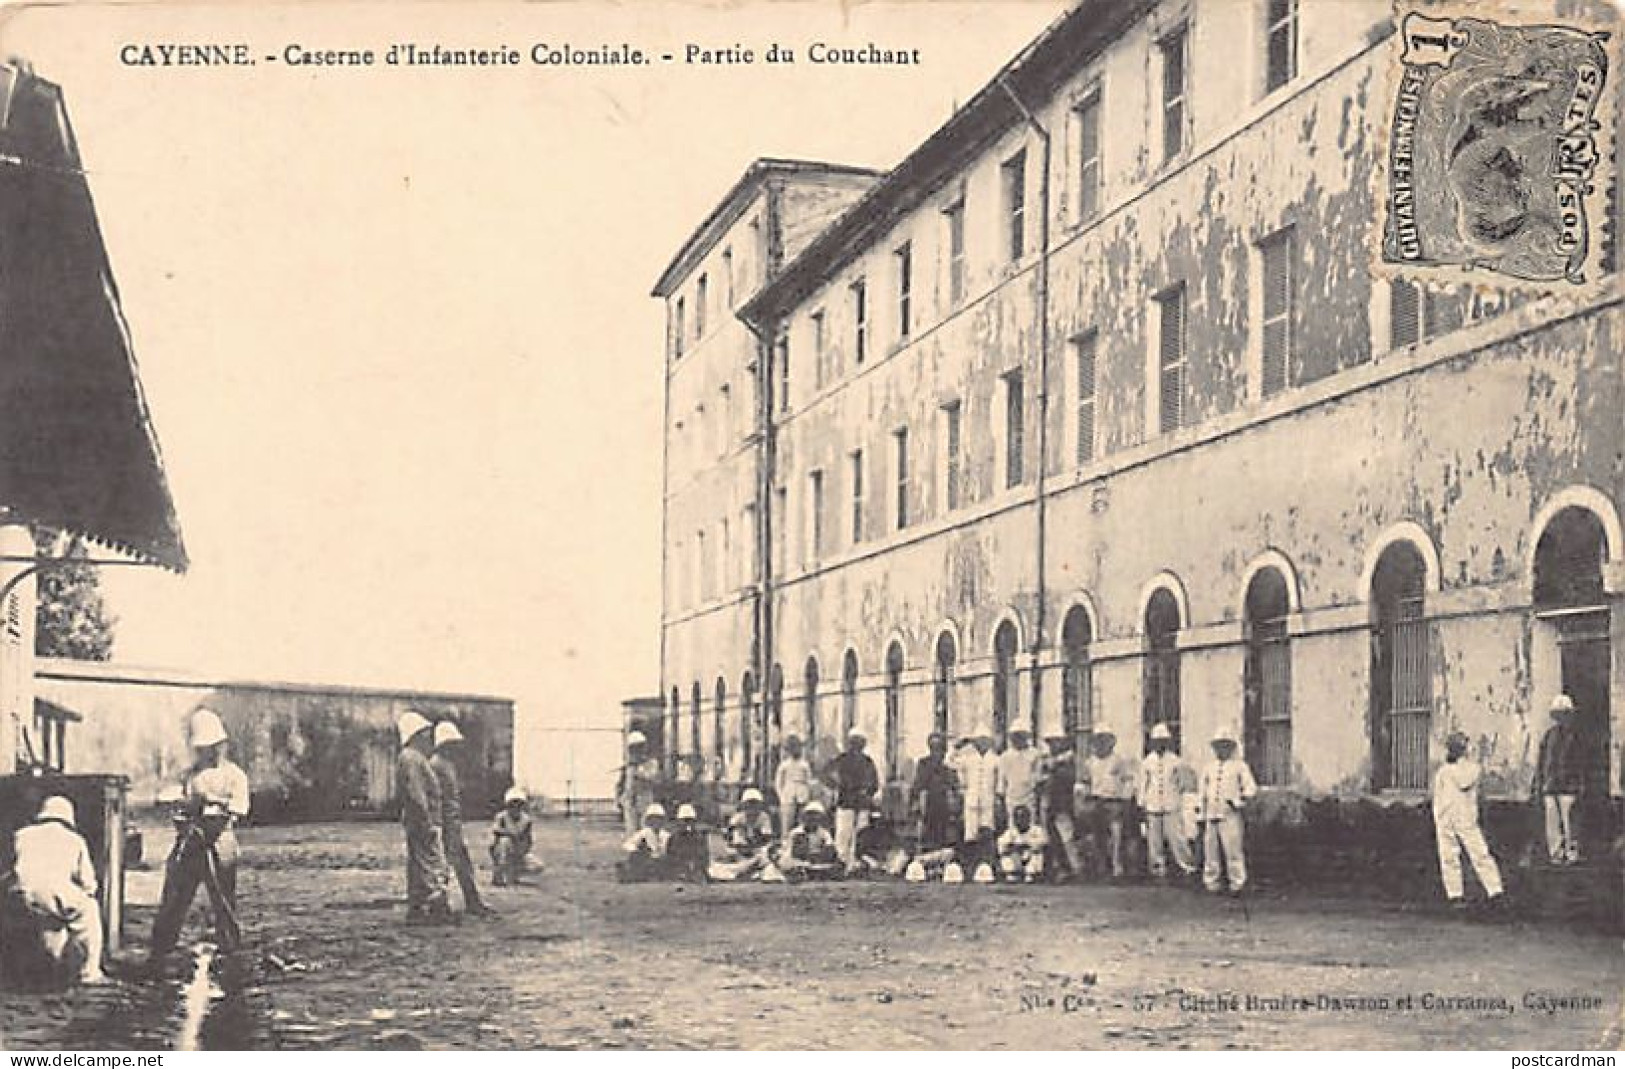 Guyane - CAYENNE - Caserne D'Infanterie Coloniale - Partie Du Couchant - Ed. M. Bruère-Dawson 57 - Cayenne